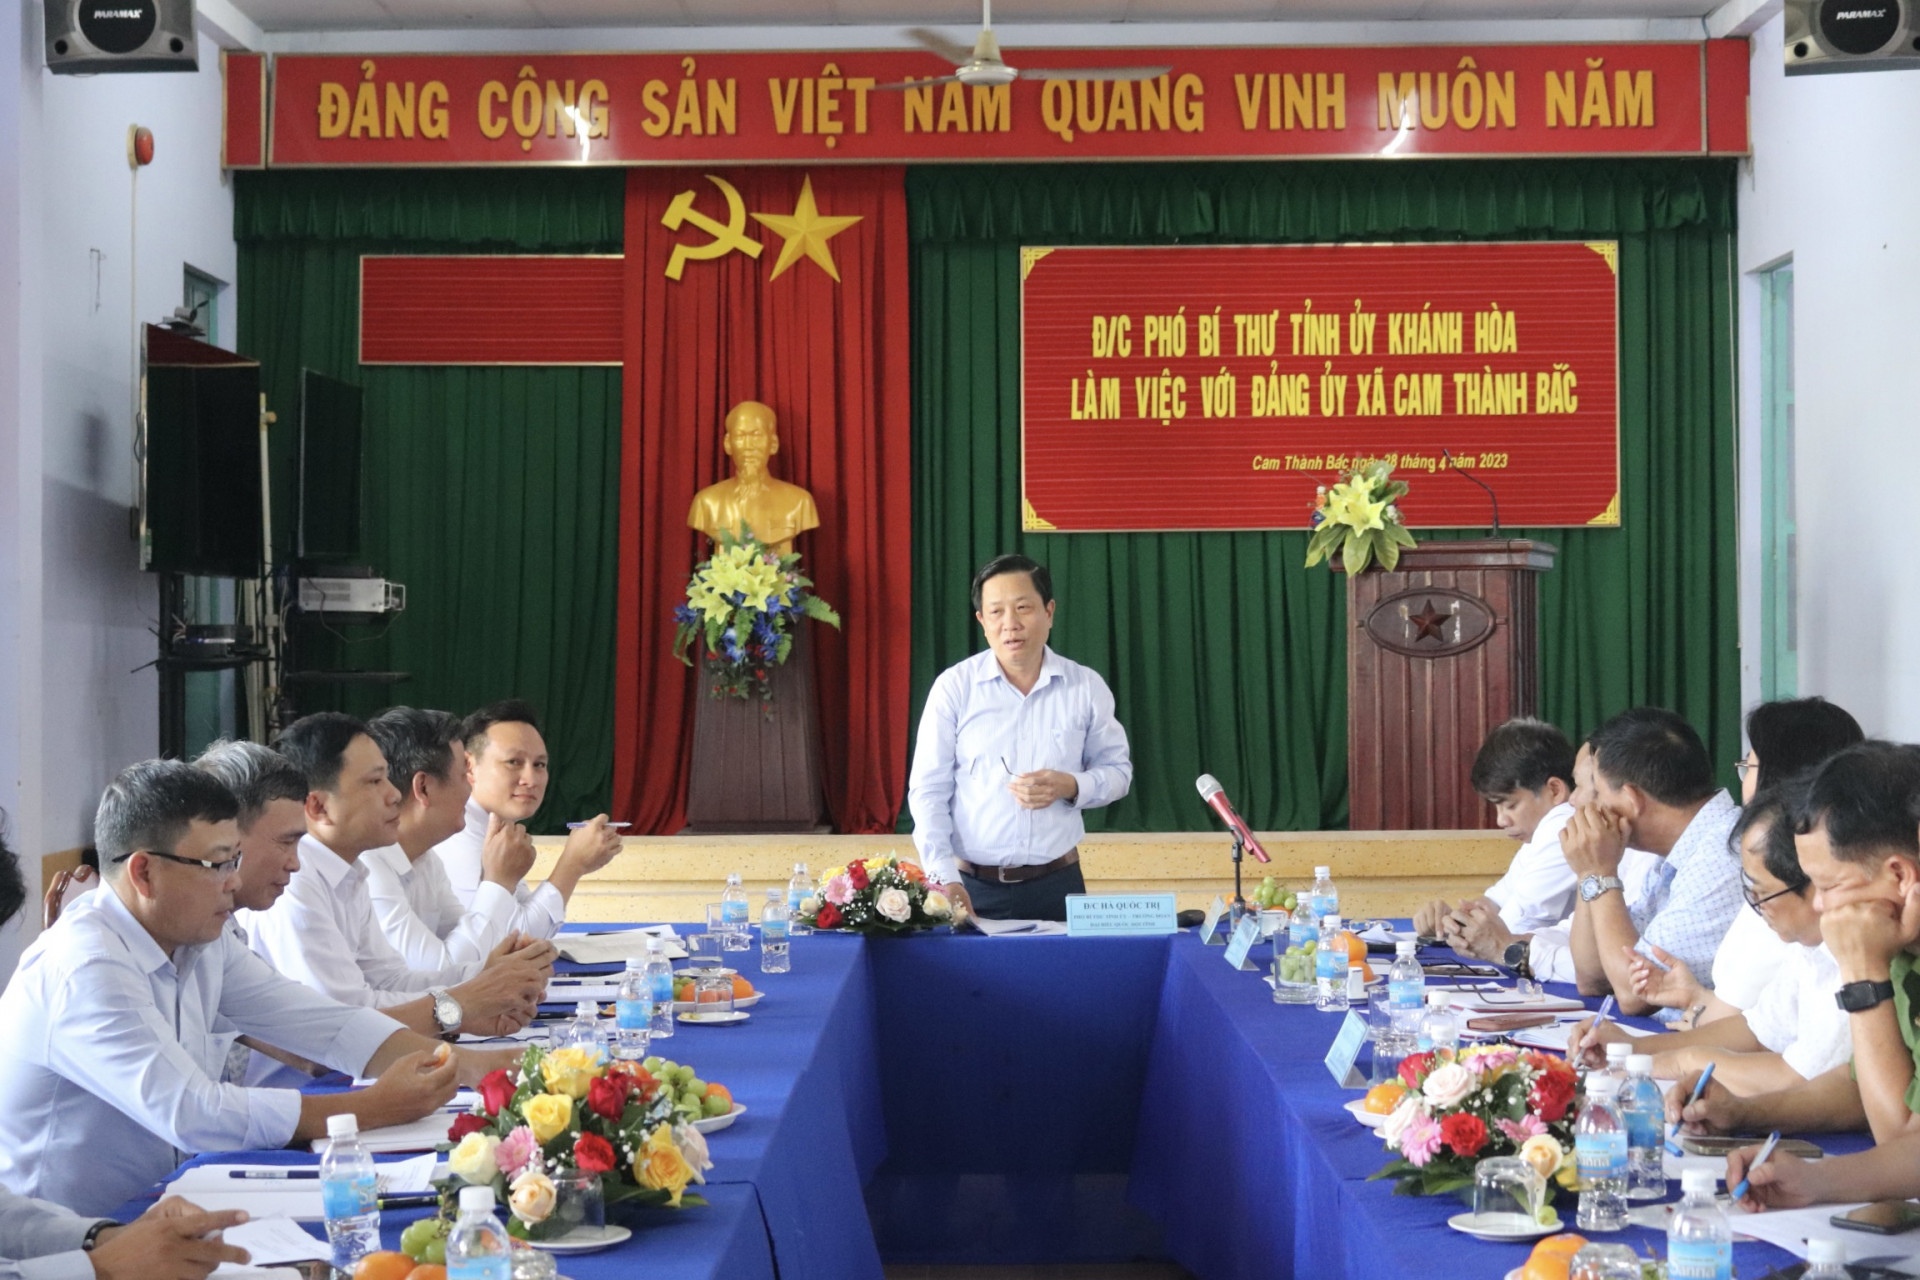 Ông Hà Quốc Trị làm việc về công tác xây dựng Đảng tại xã Cam Thành Bắc.